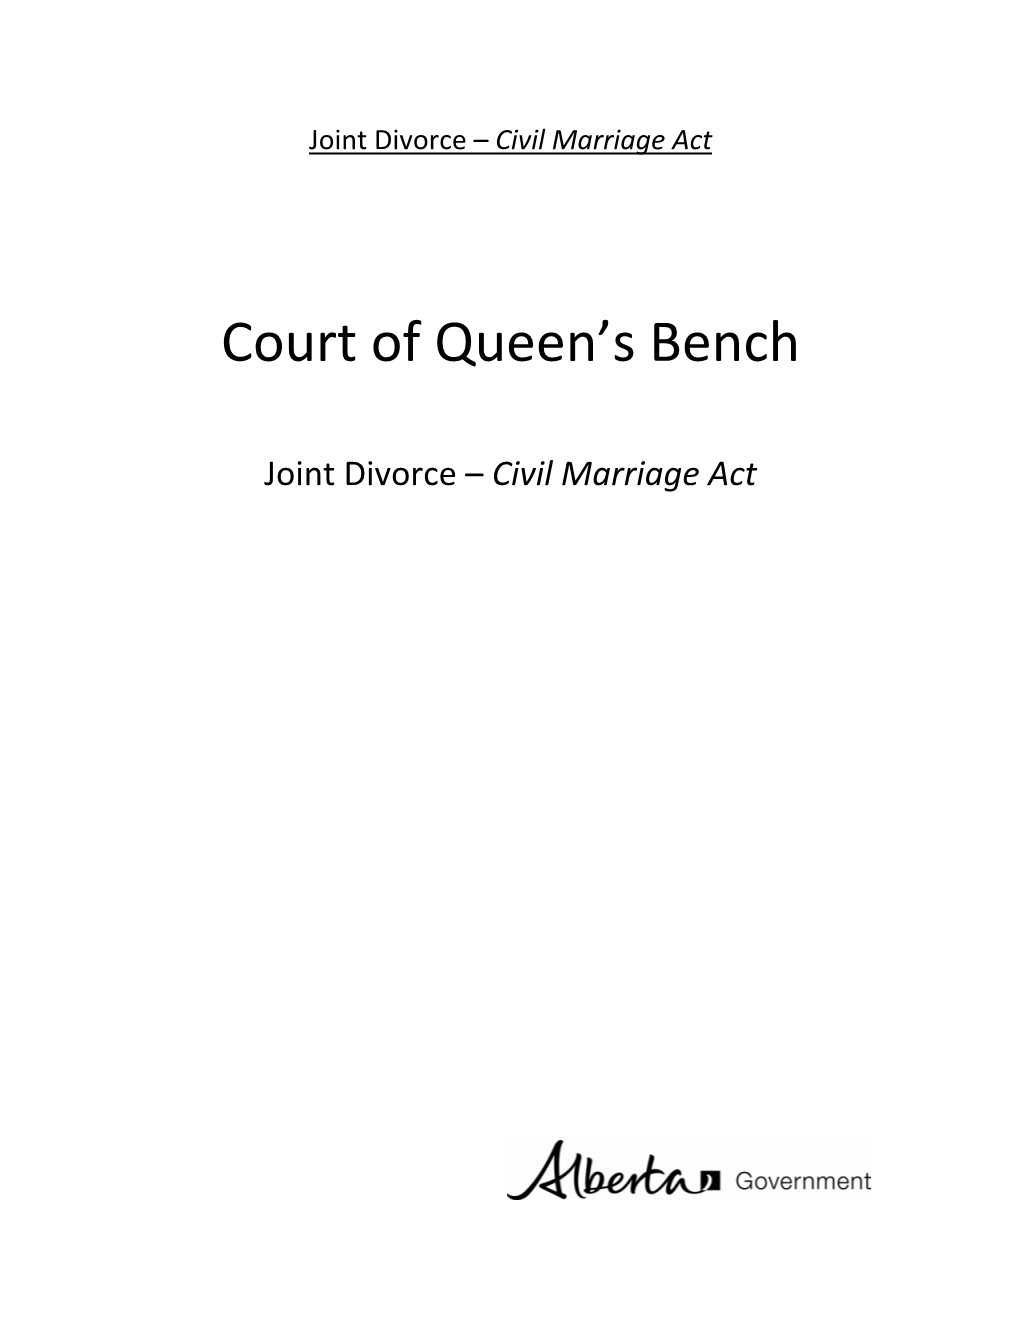 Court of Queen's Bench